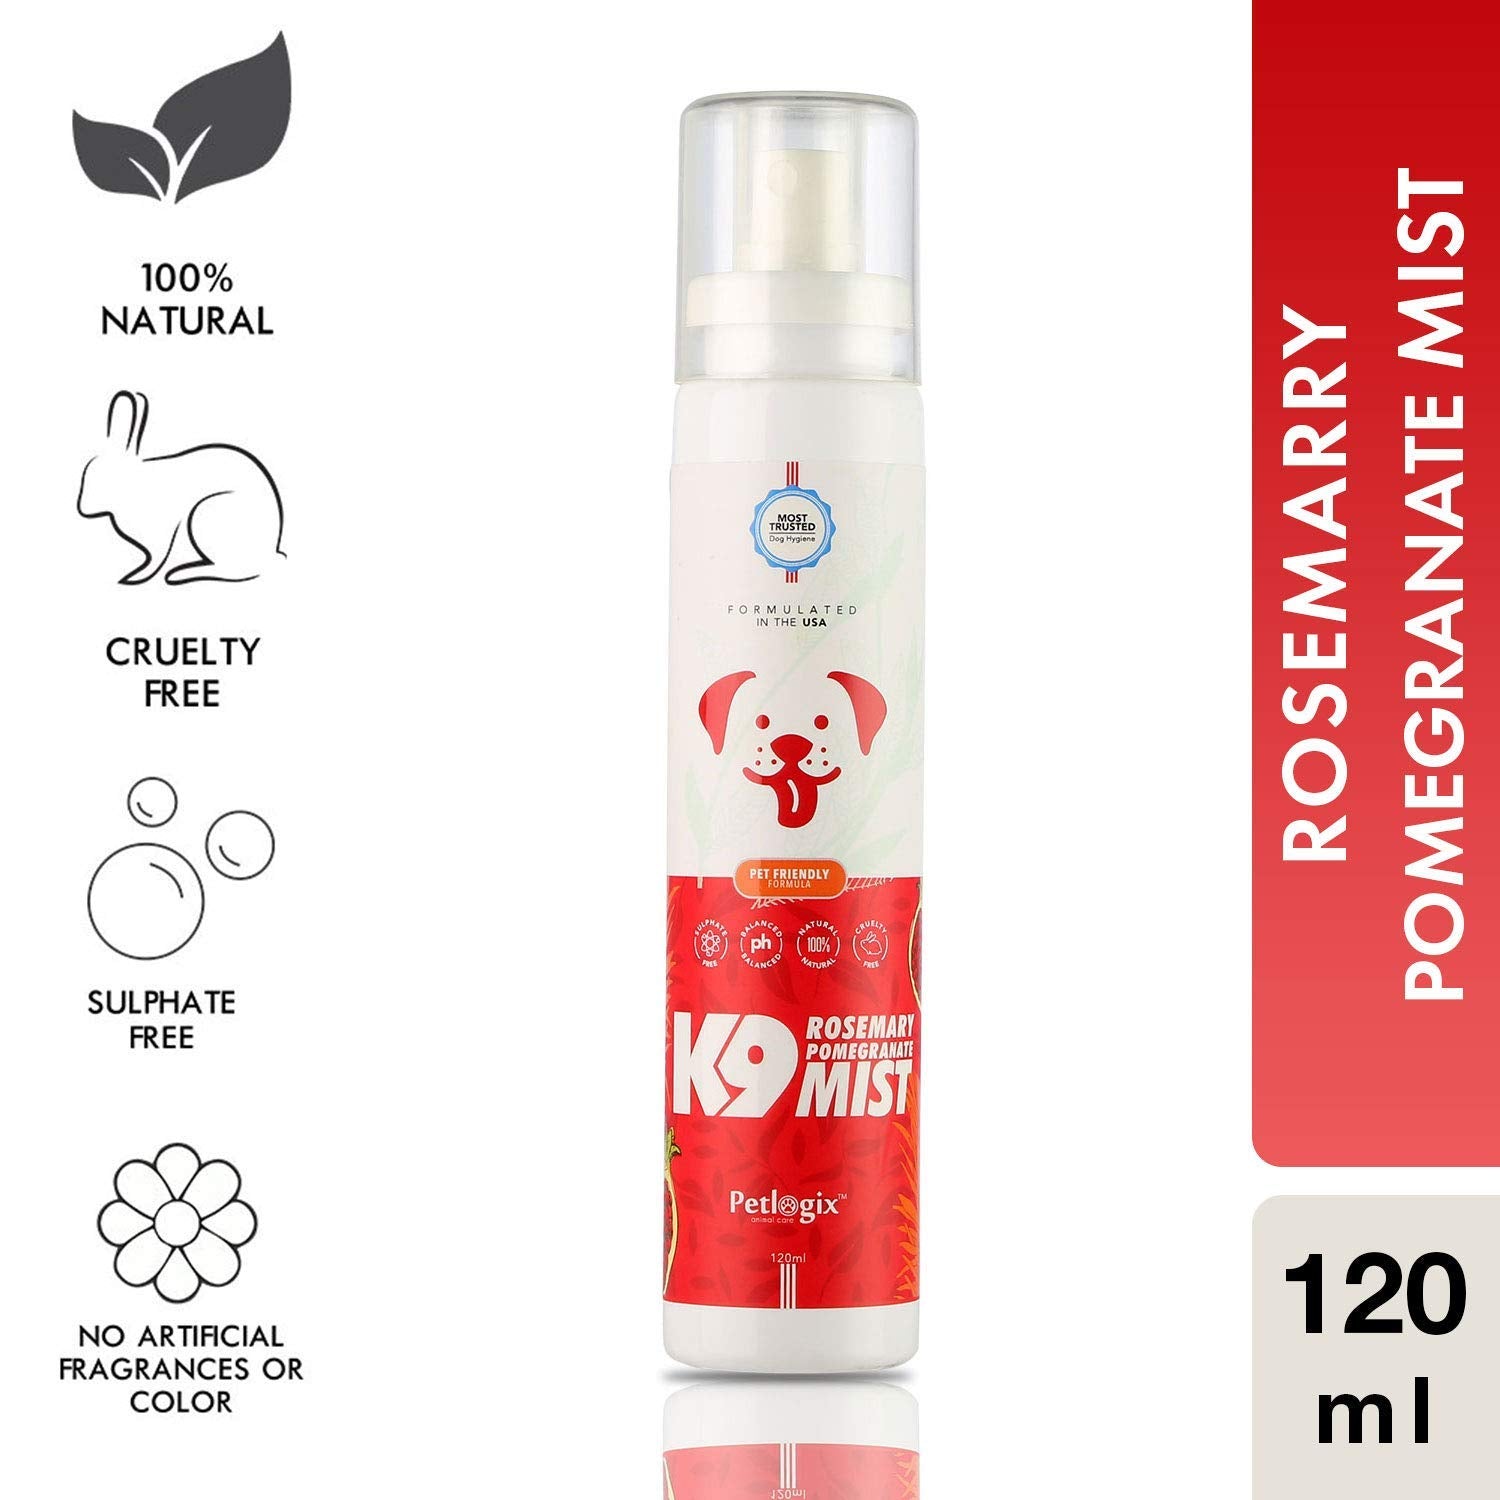 Rosemary & Pomegrante K9 Mist ( Odour Control Spray)